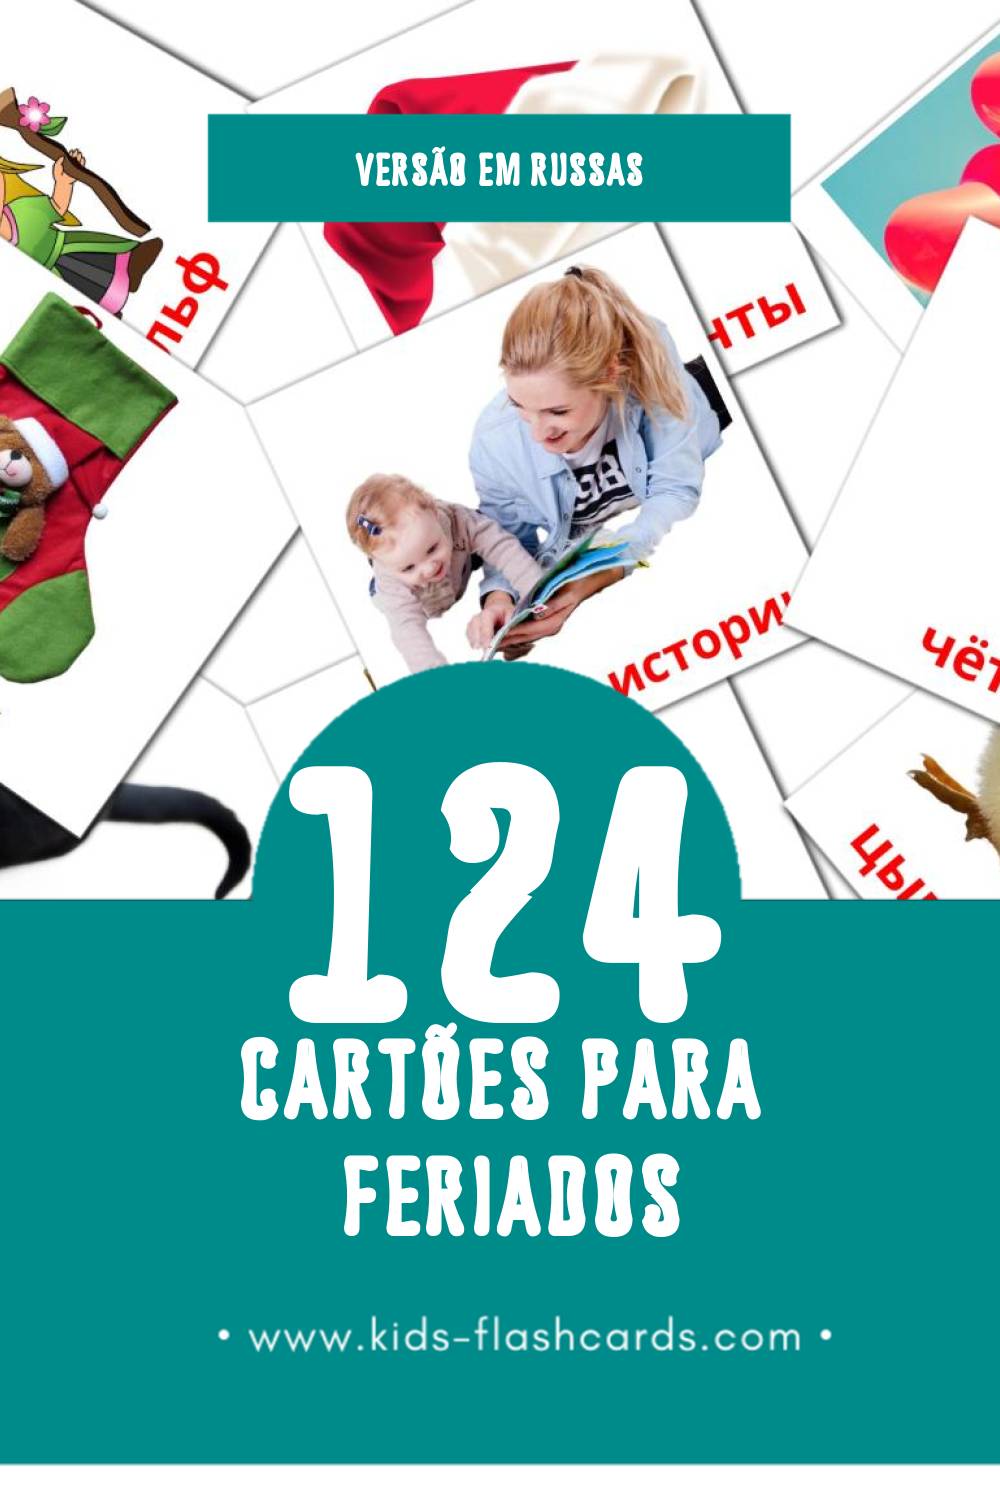 Flashcards de Праздники Visuais para Toddlers (124 cartões em Russas)